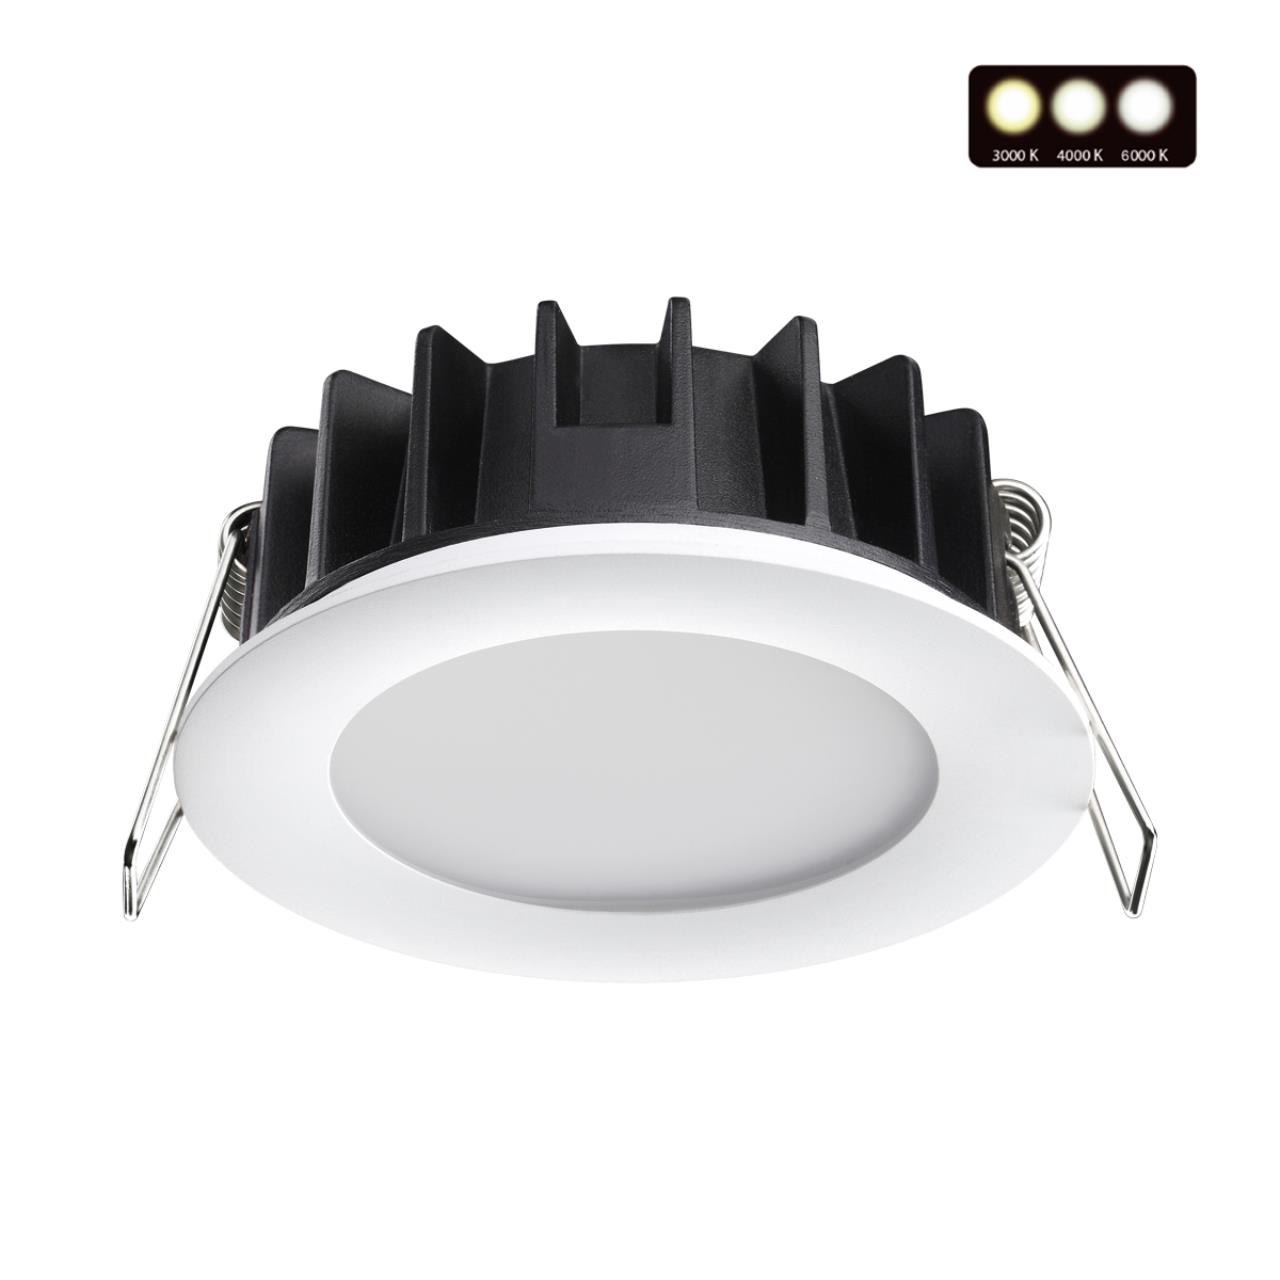 Светодиодный светильник 9 см, 10W, 3000-6000K, Novotech Lante 358949, белый